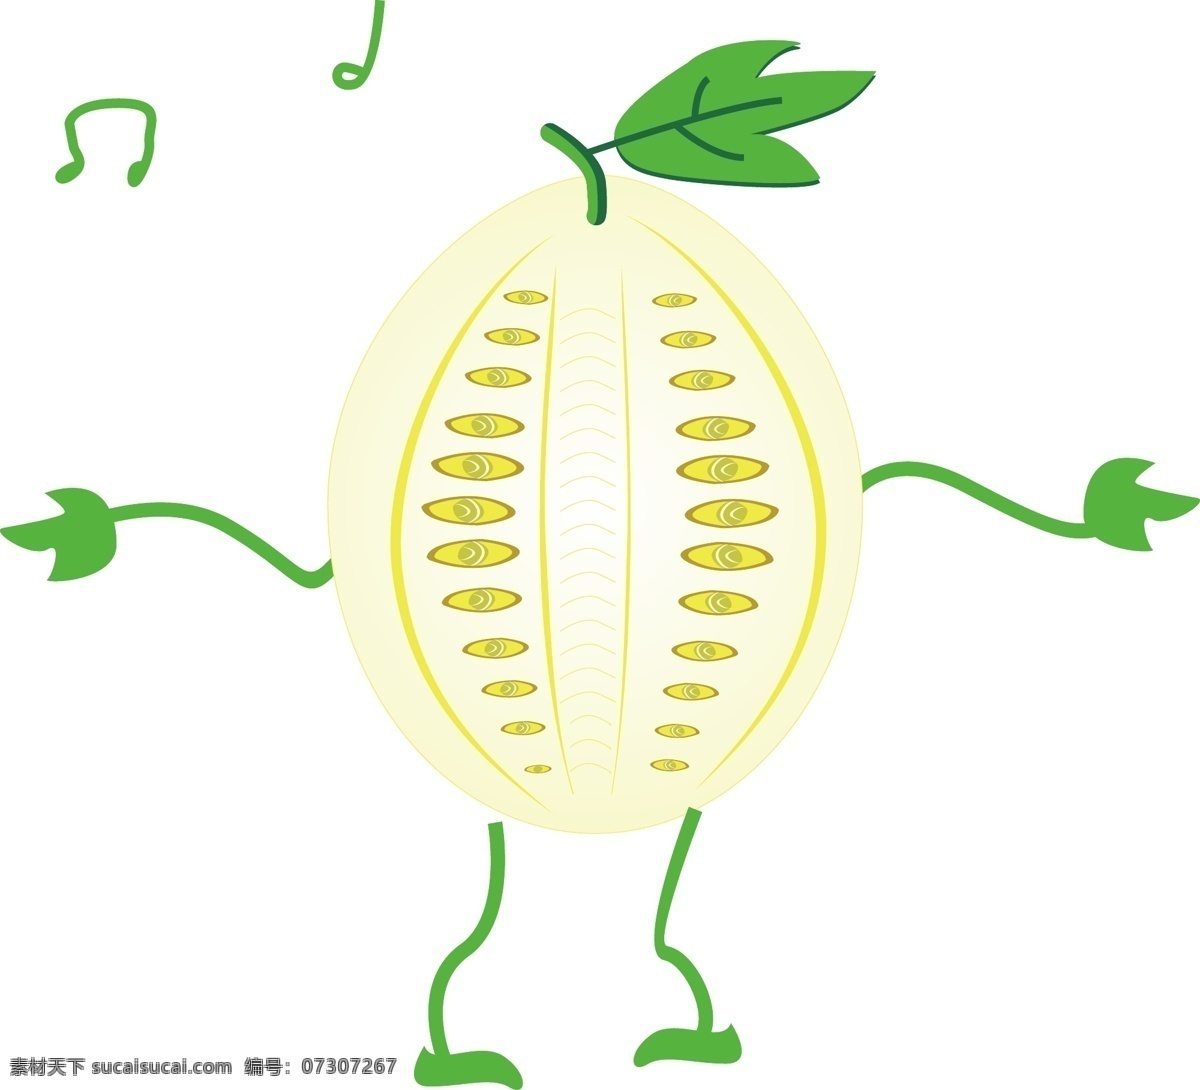 矢量 卡通 跳舞 香瓜 小人 矢量香瓜 卡通小人 绿叶 舞动的植物 拟人 扁平 水果插画 音符 卡通插画 可爱的香瓜